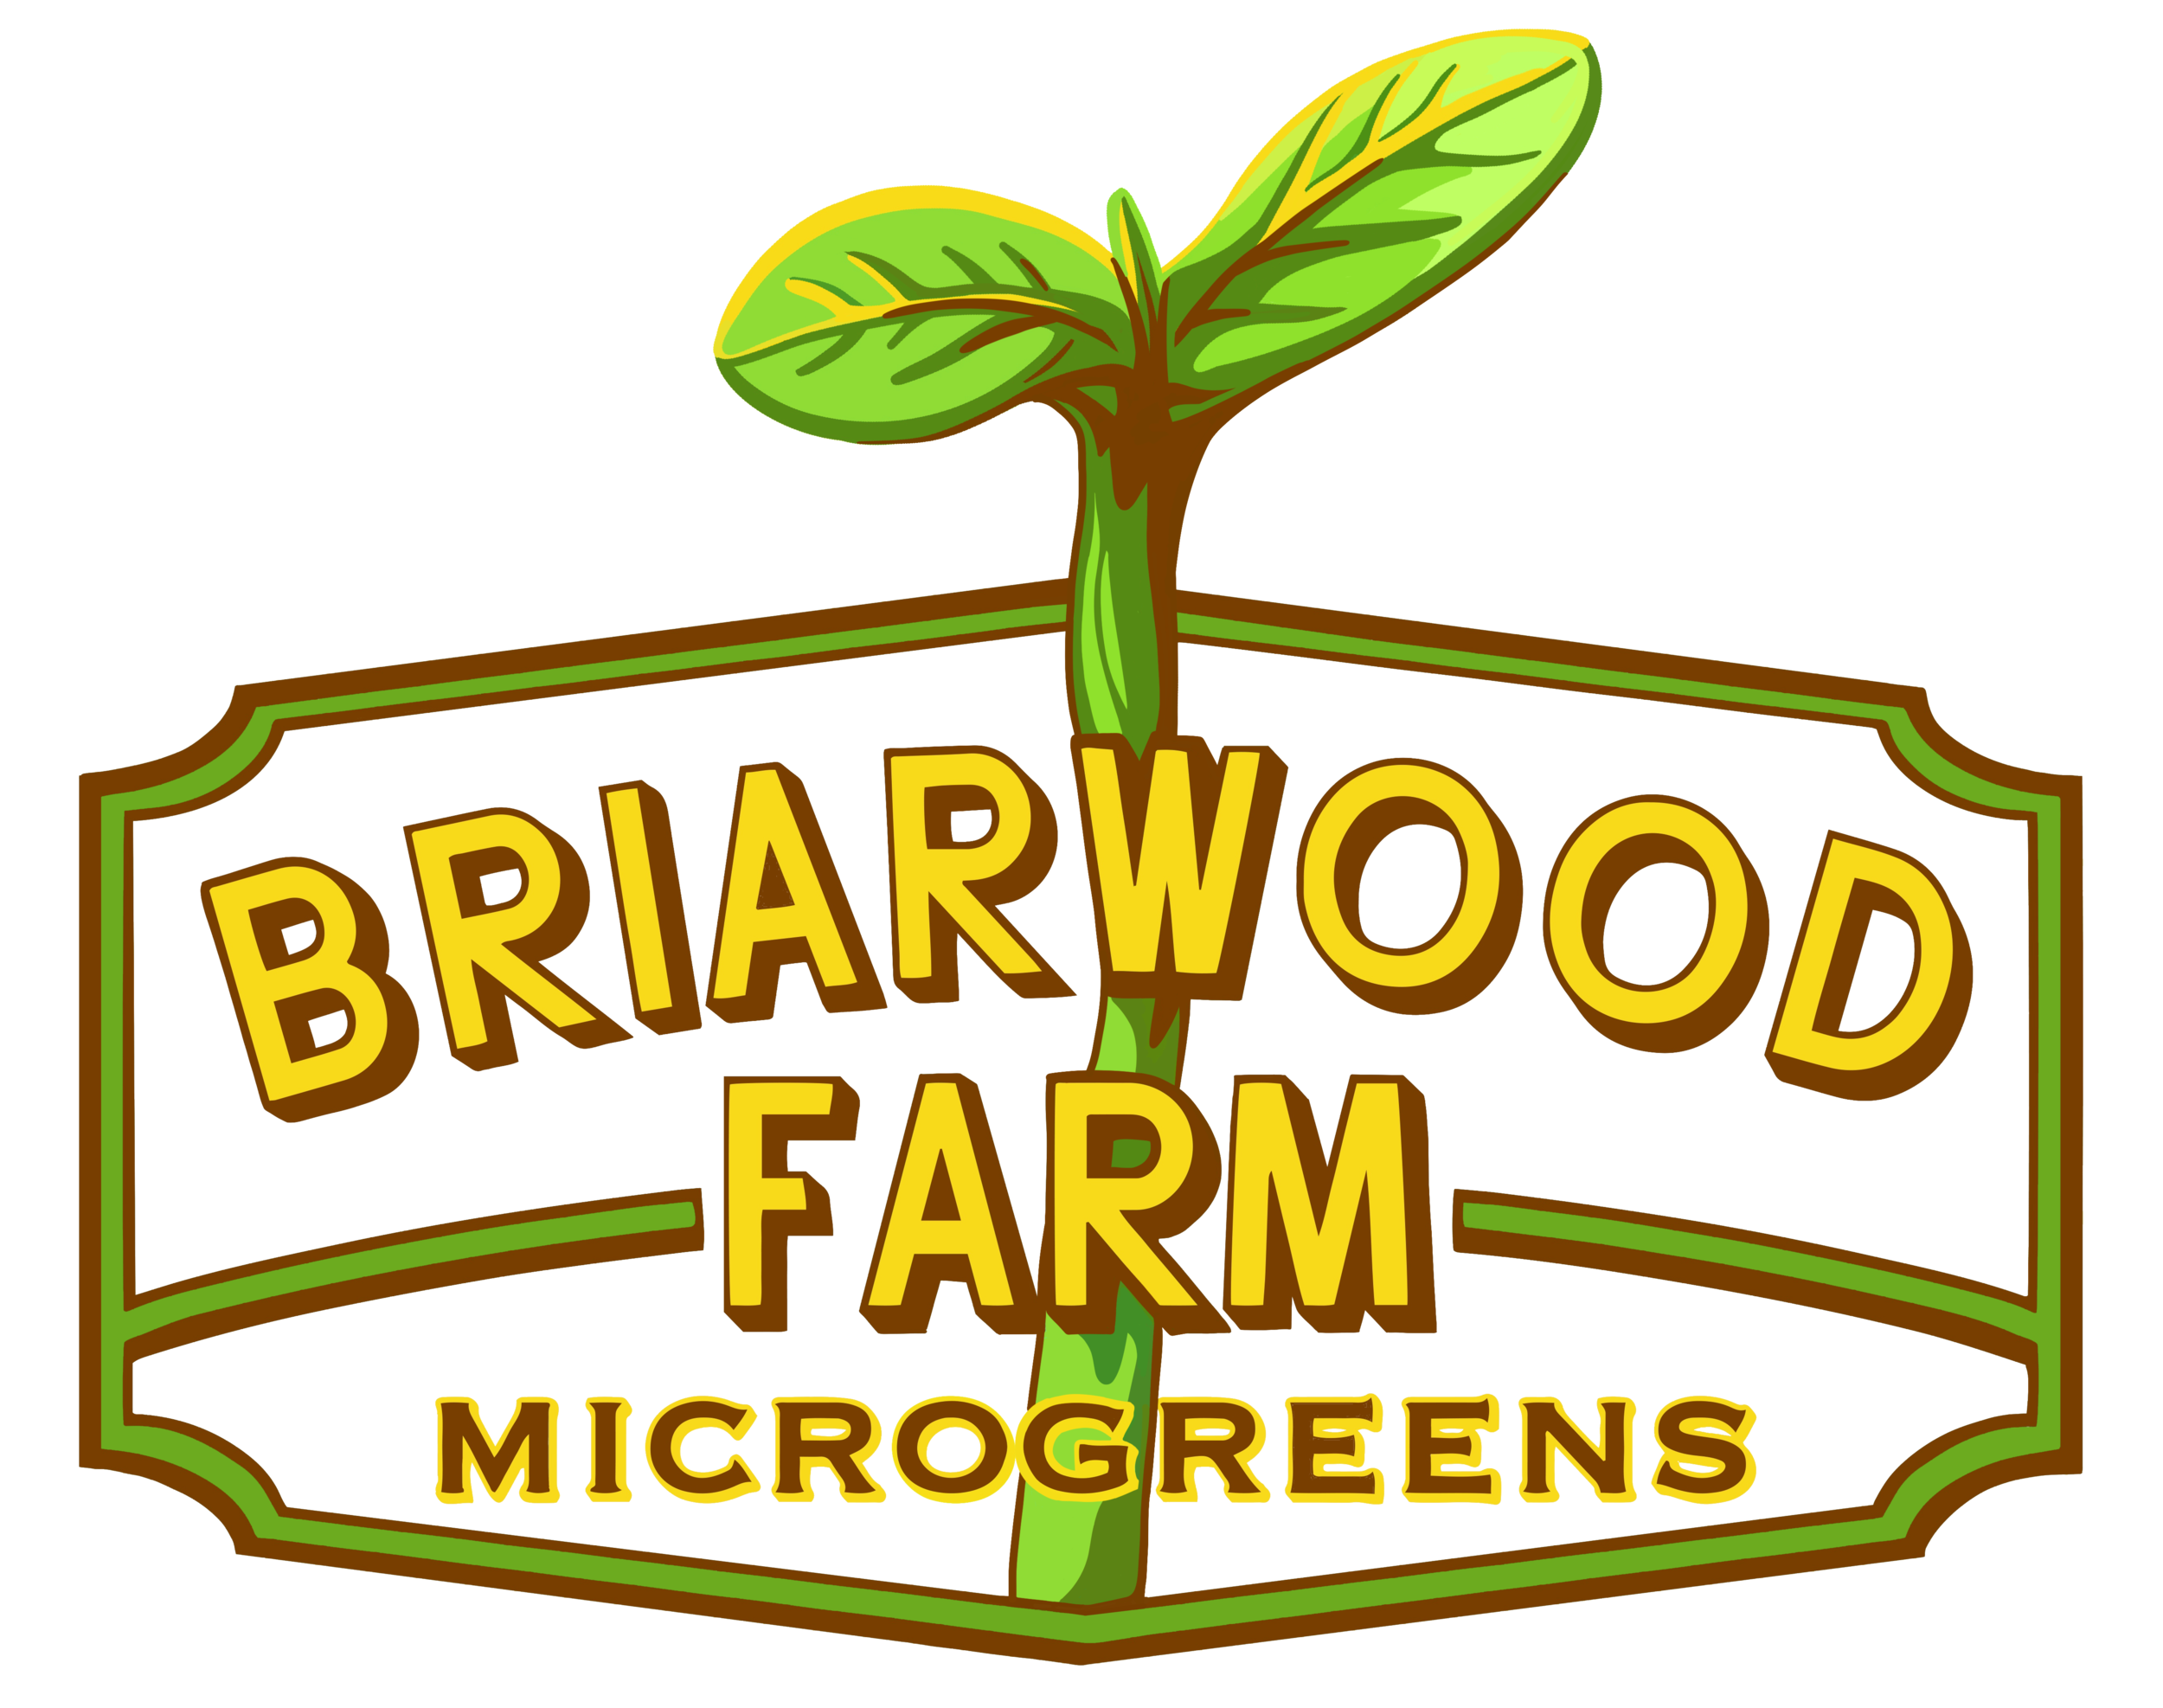 Briarwood Farm Microgreens